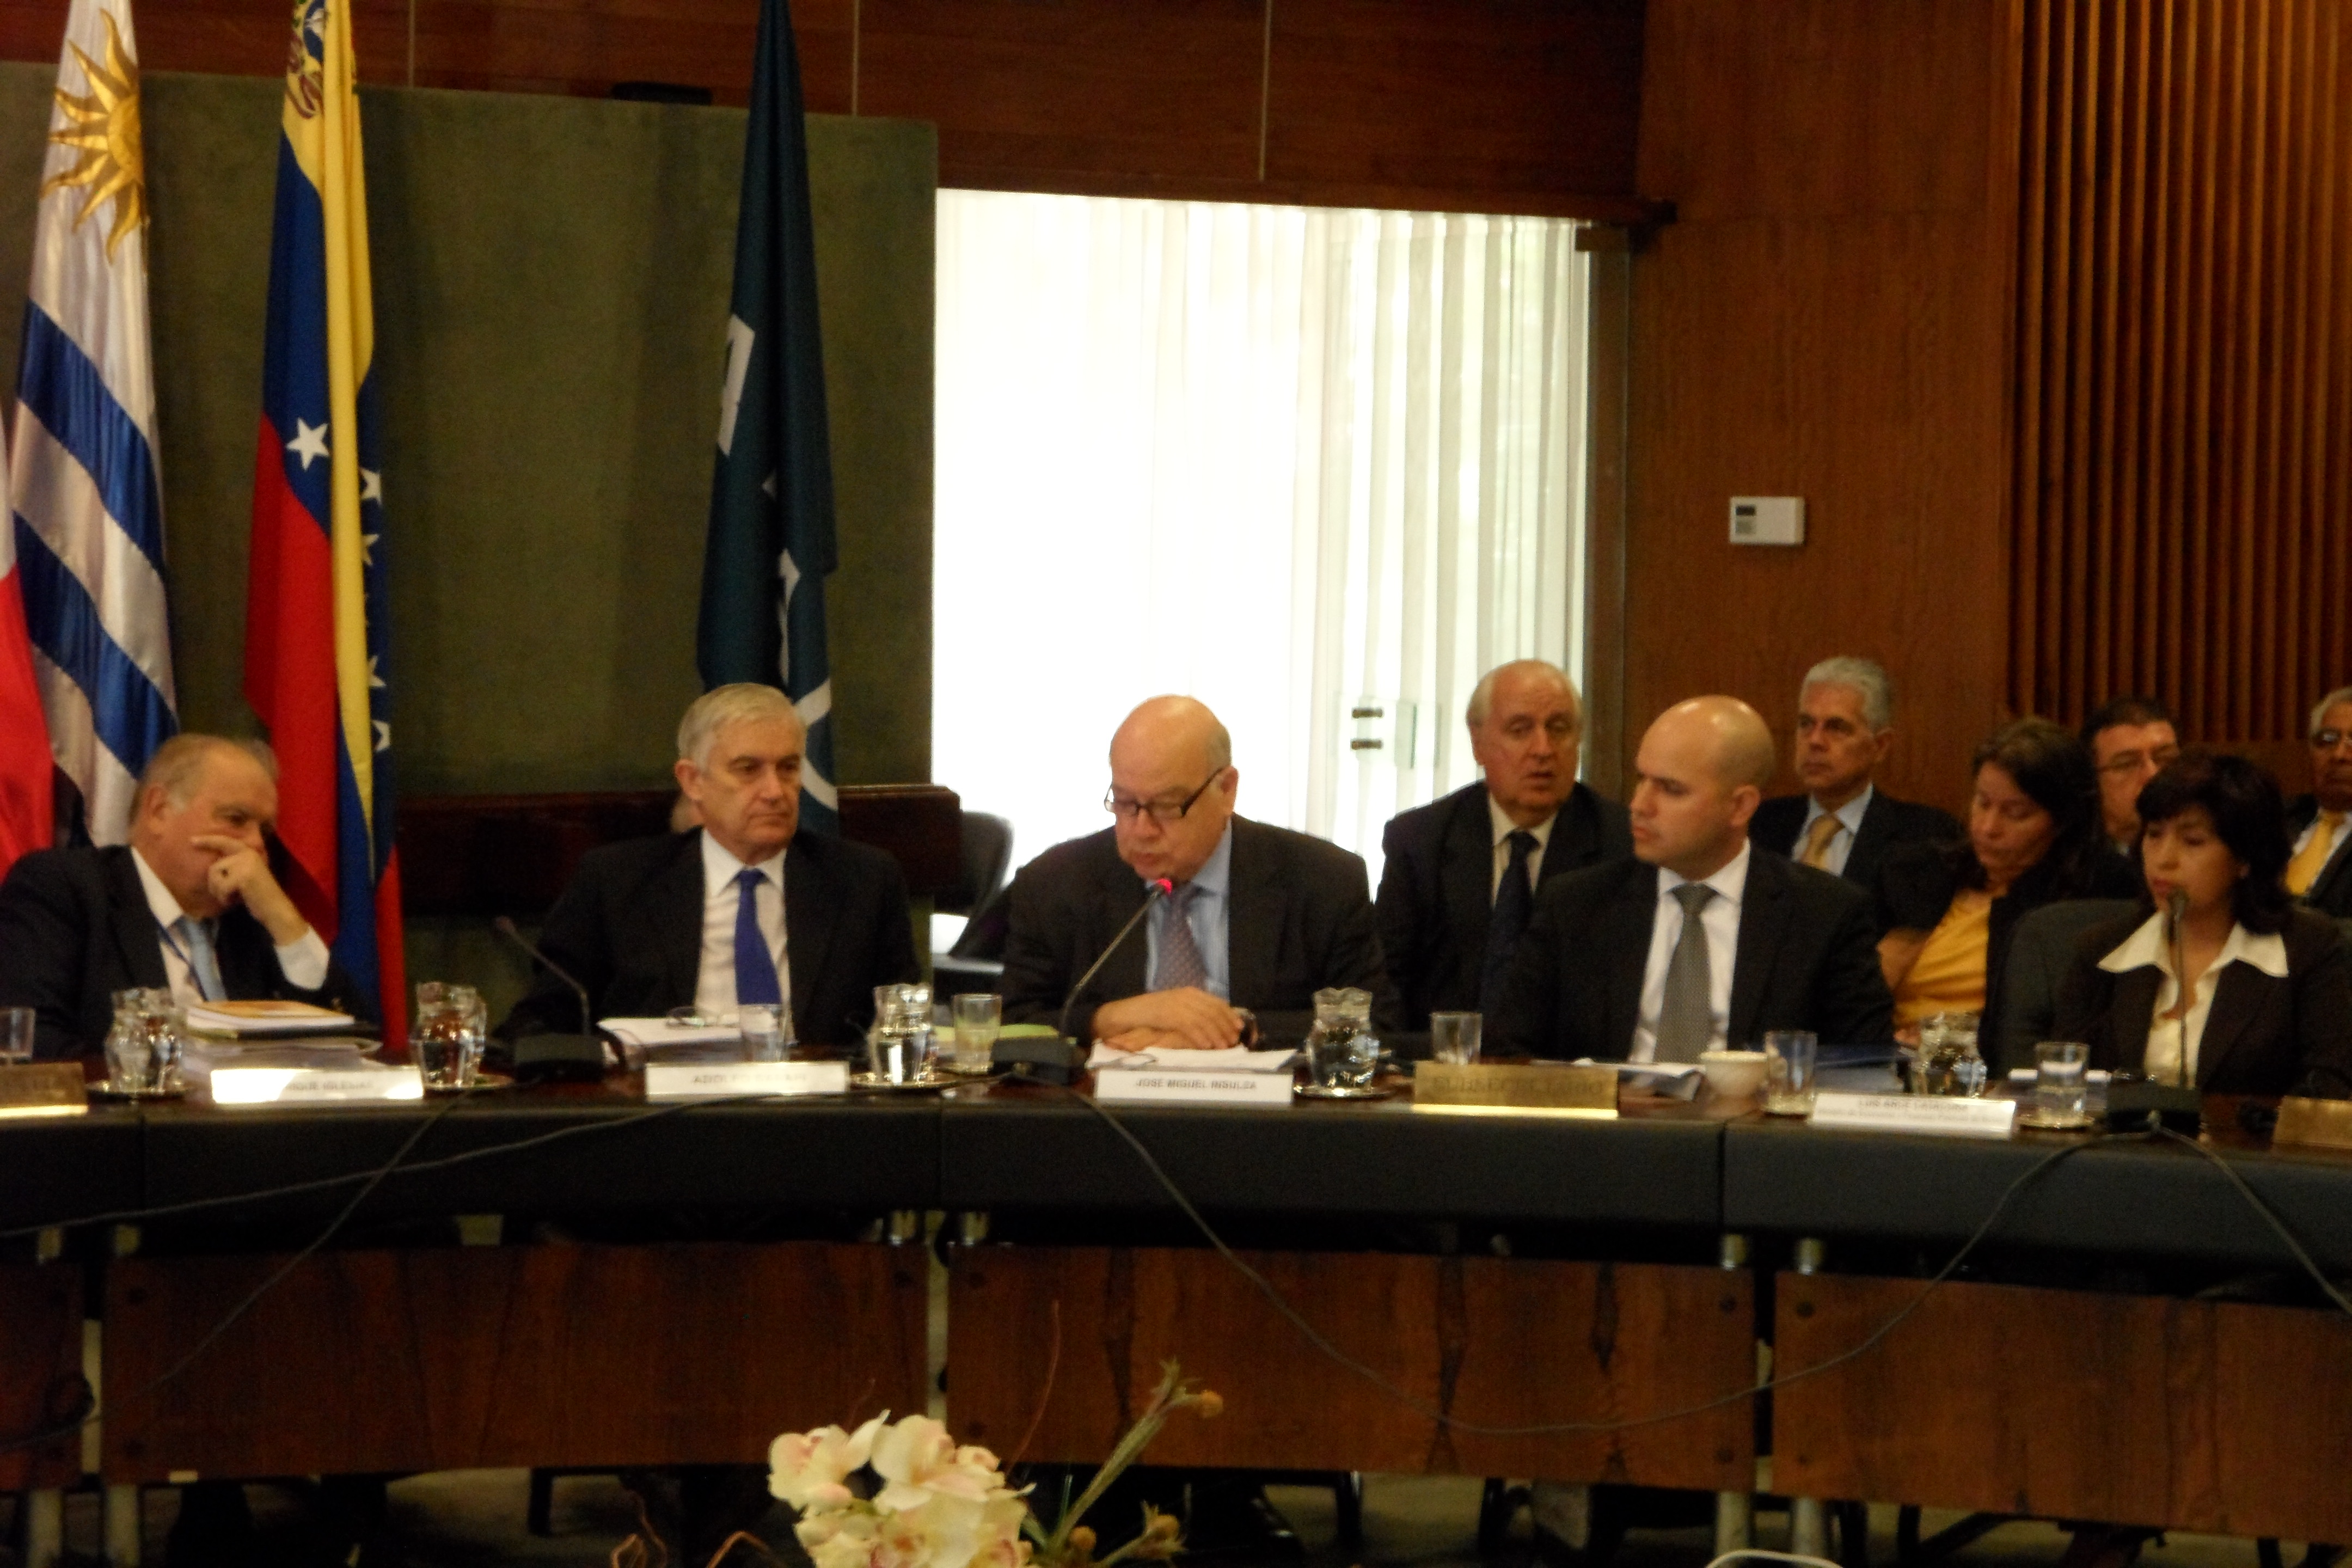 Intervención del Secretario General de la OEA, Don José Miguel Insulza en el Foro de Altas Autoridades Económicas Desarrollado en ALADI(16 de marzo de 2012)